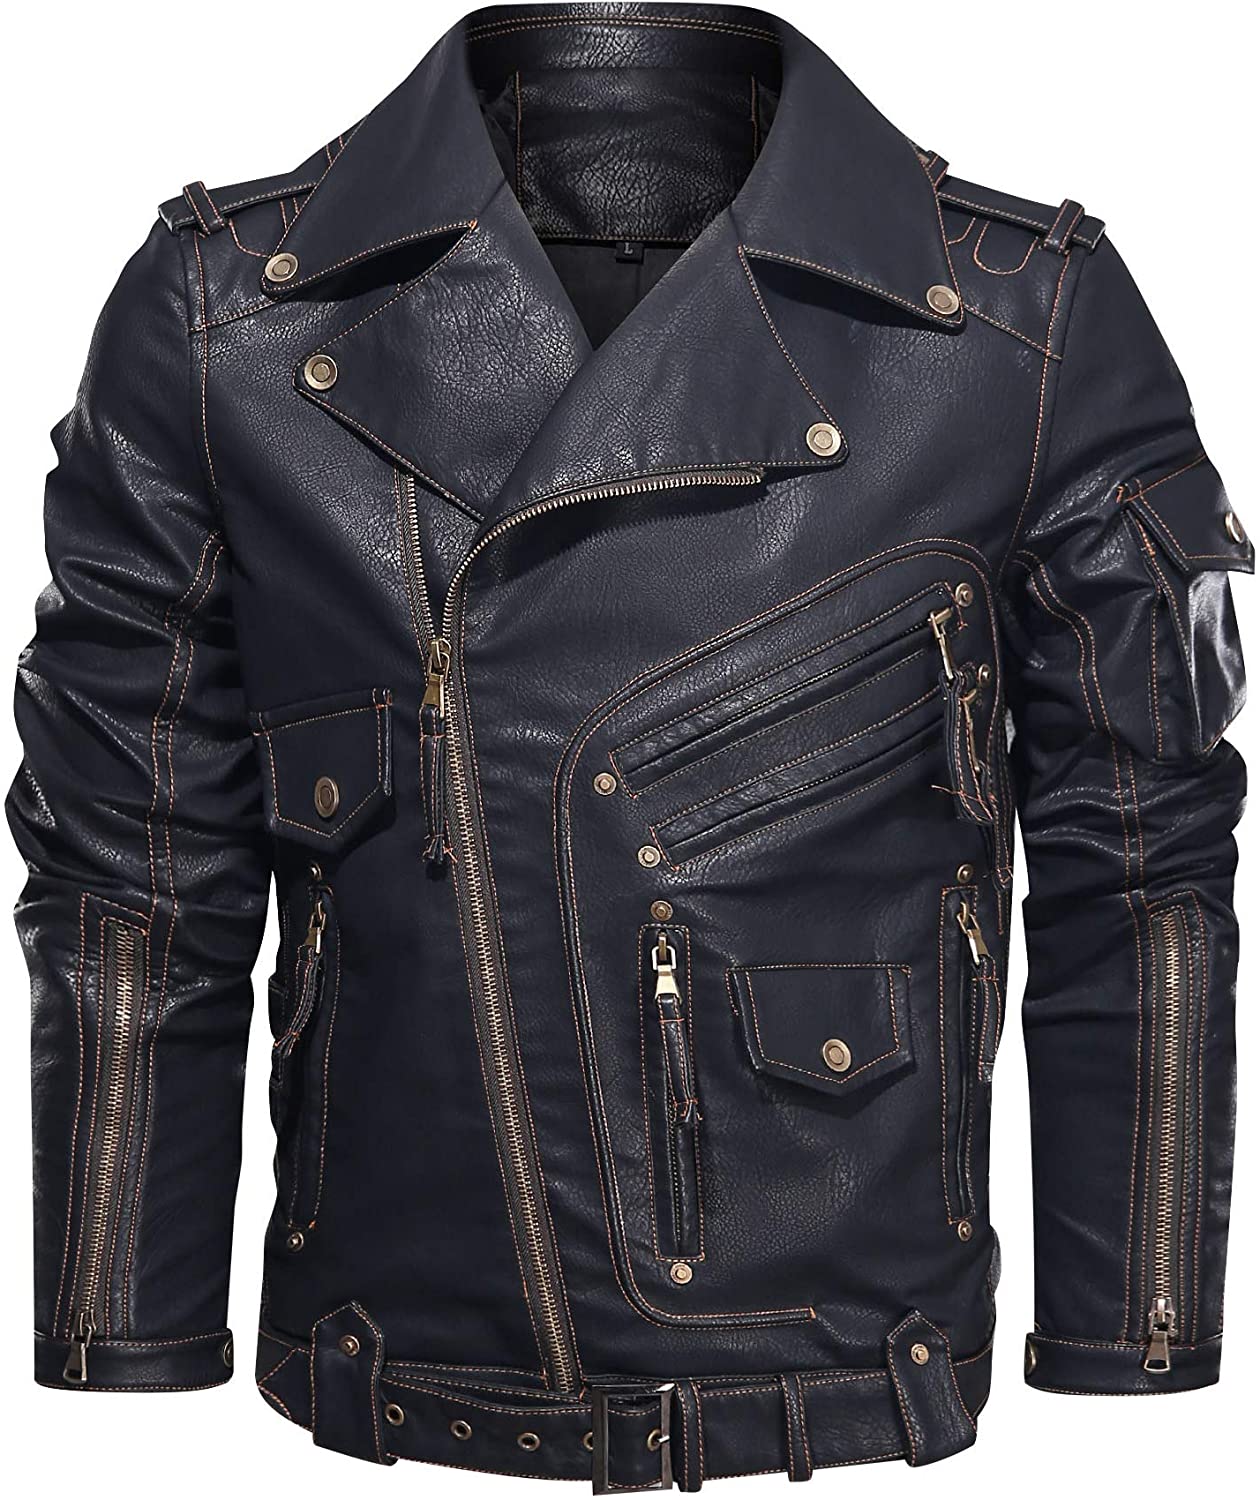 Heihuohua Men's Faux Leather Motorcycle Jacket Heavy Industry Zipper  Designd Poc